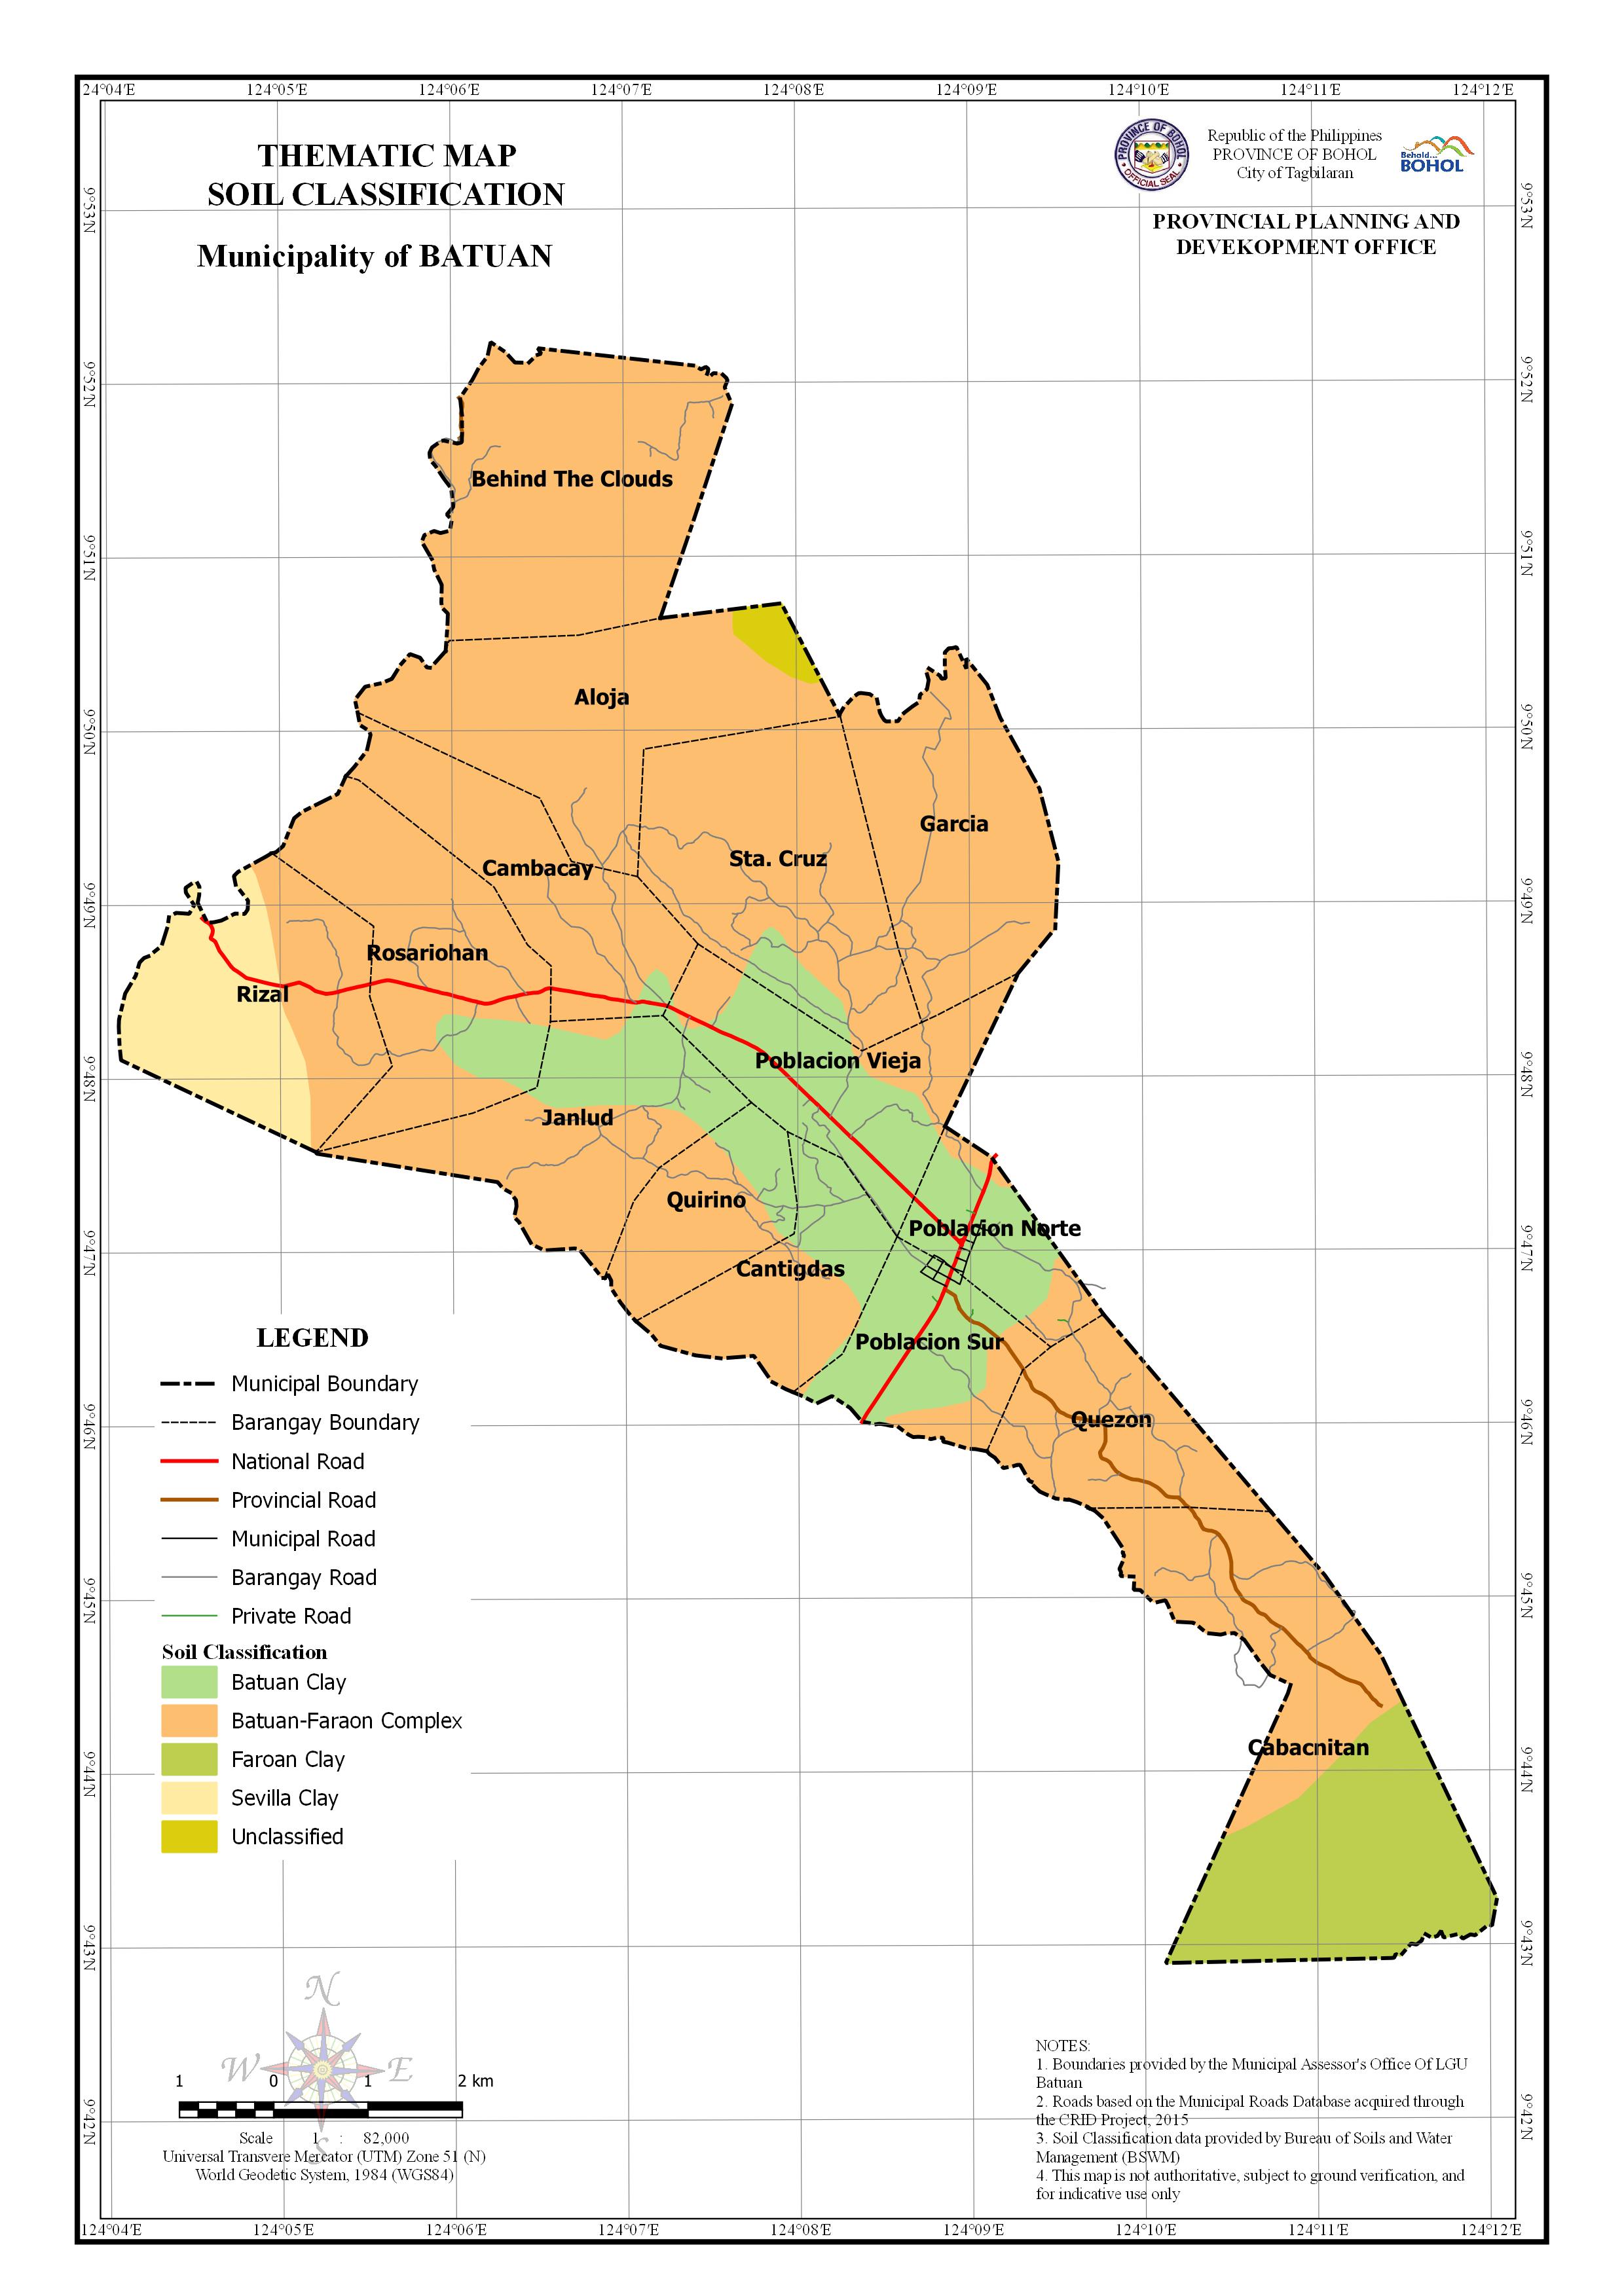 Soil classification Map of Batuan